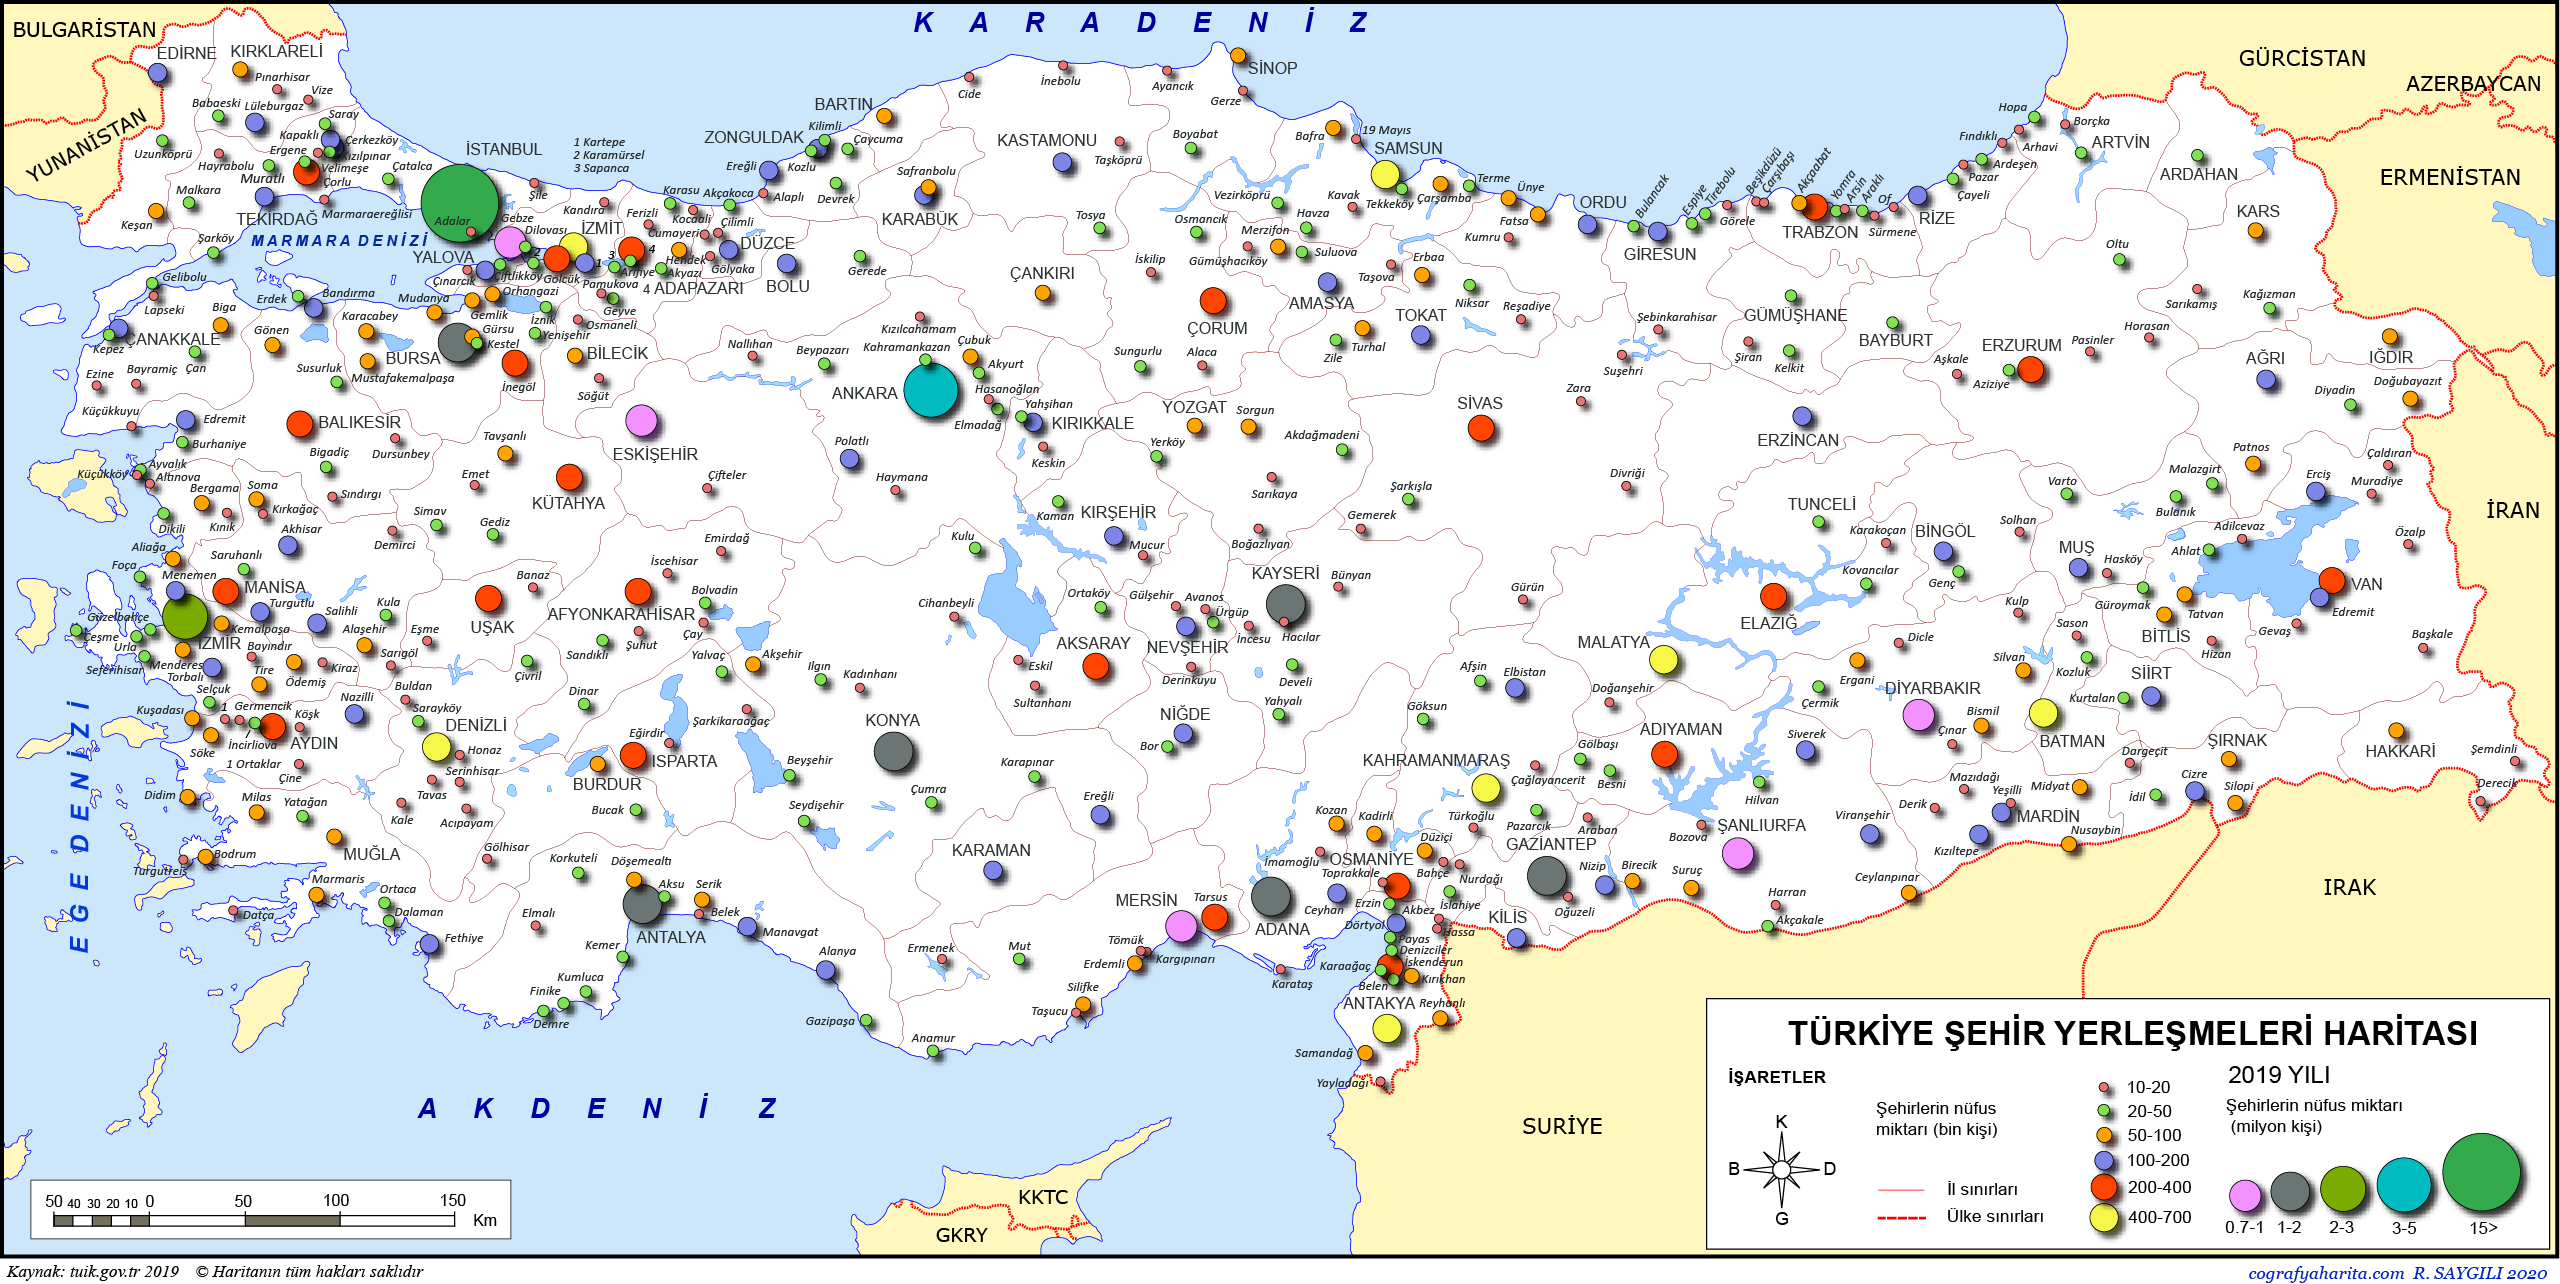 turkiye yerlesme haritalari